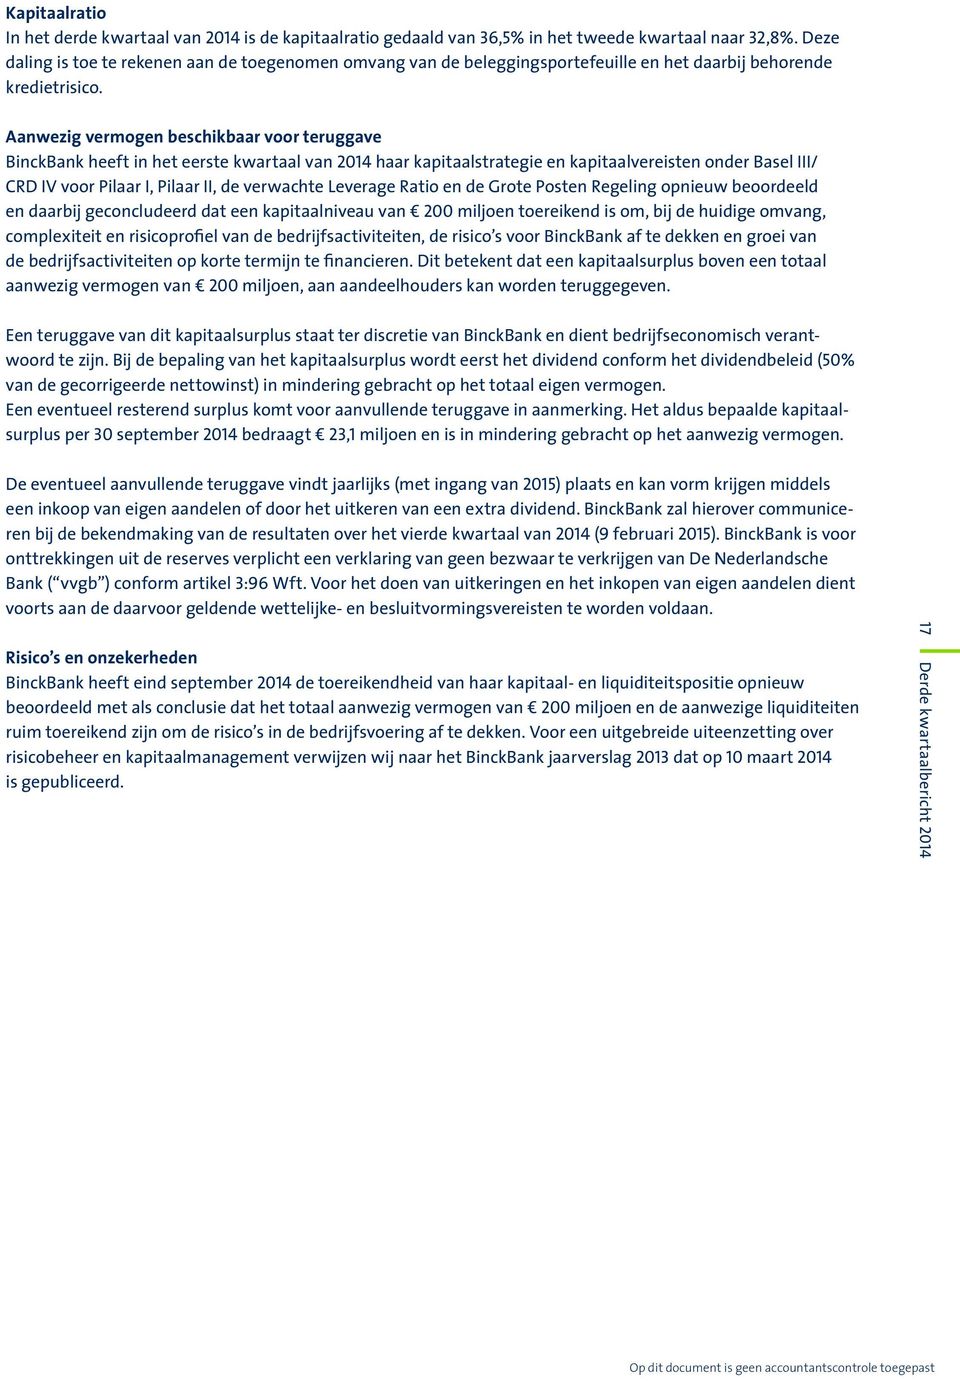 Aanwezig vermogen beschikbaar voor teruggave BinckBank heeft in het eerste kwartaal van 2014 haar kapitaalstrategie en kapitaalvereisten onder Basel III/ CRD IV voor Pilaar I, Pilaar II, de verwachte